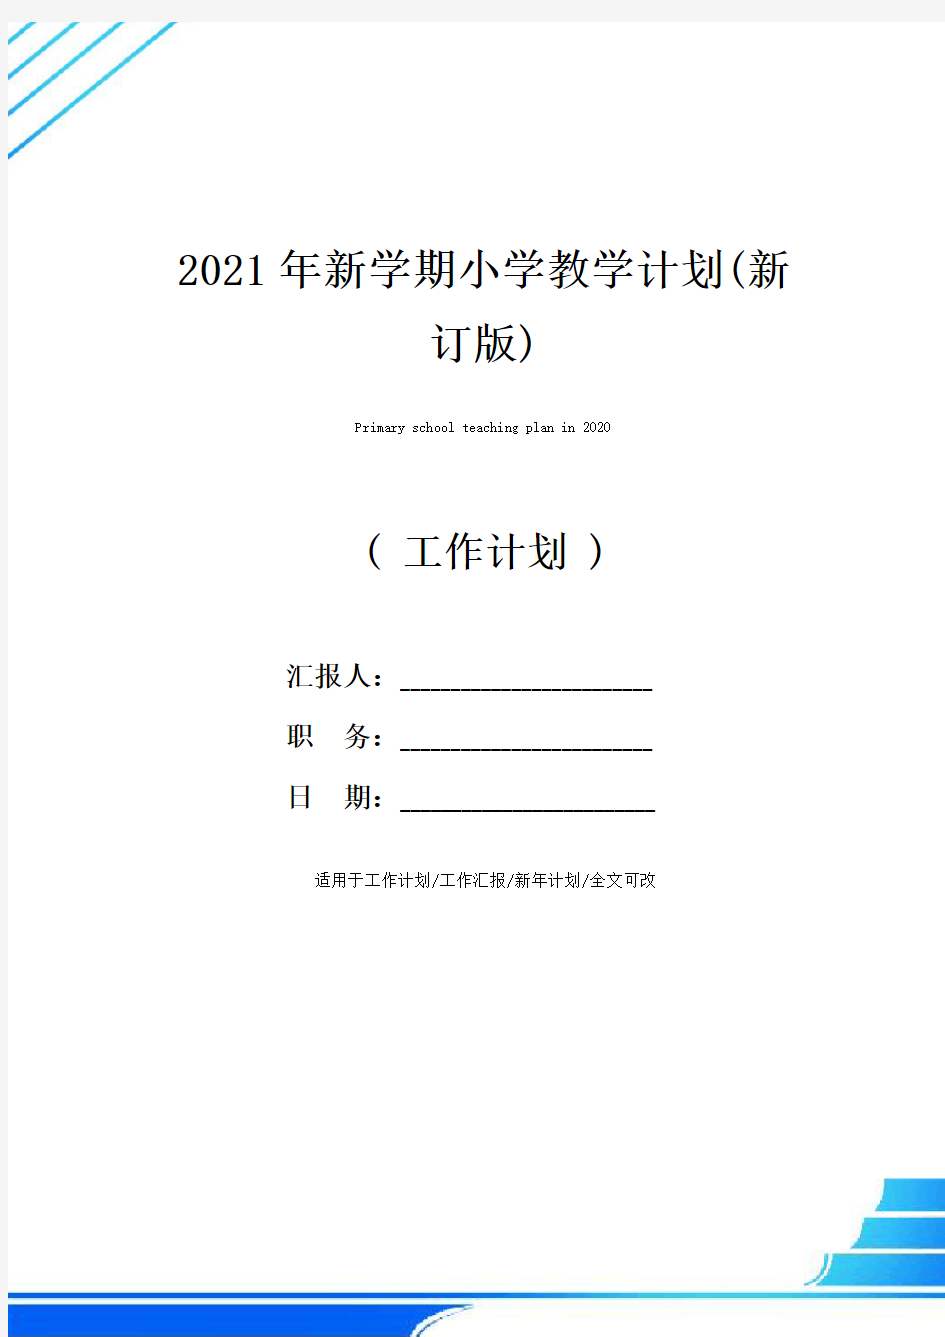 2021年新学期小学教学计划(新订版)